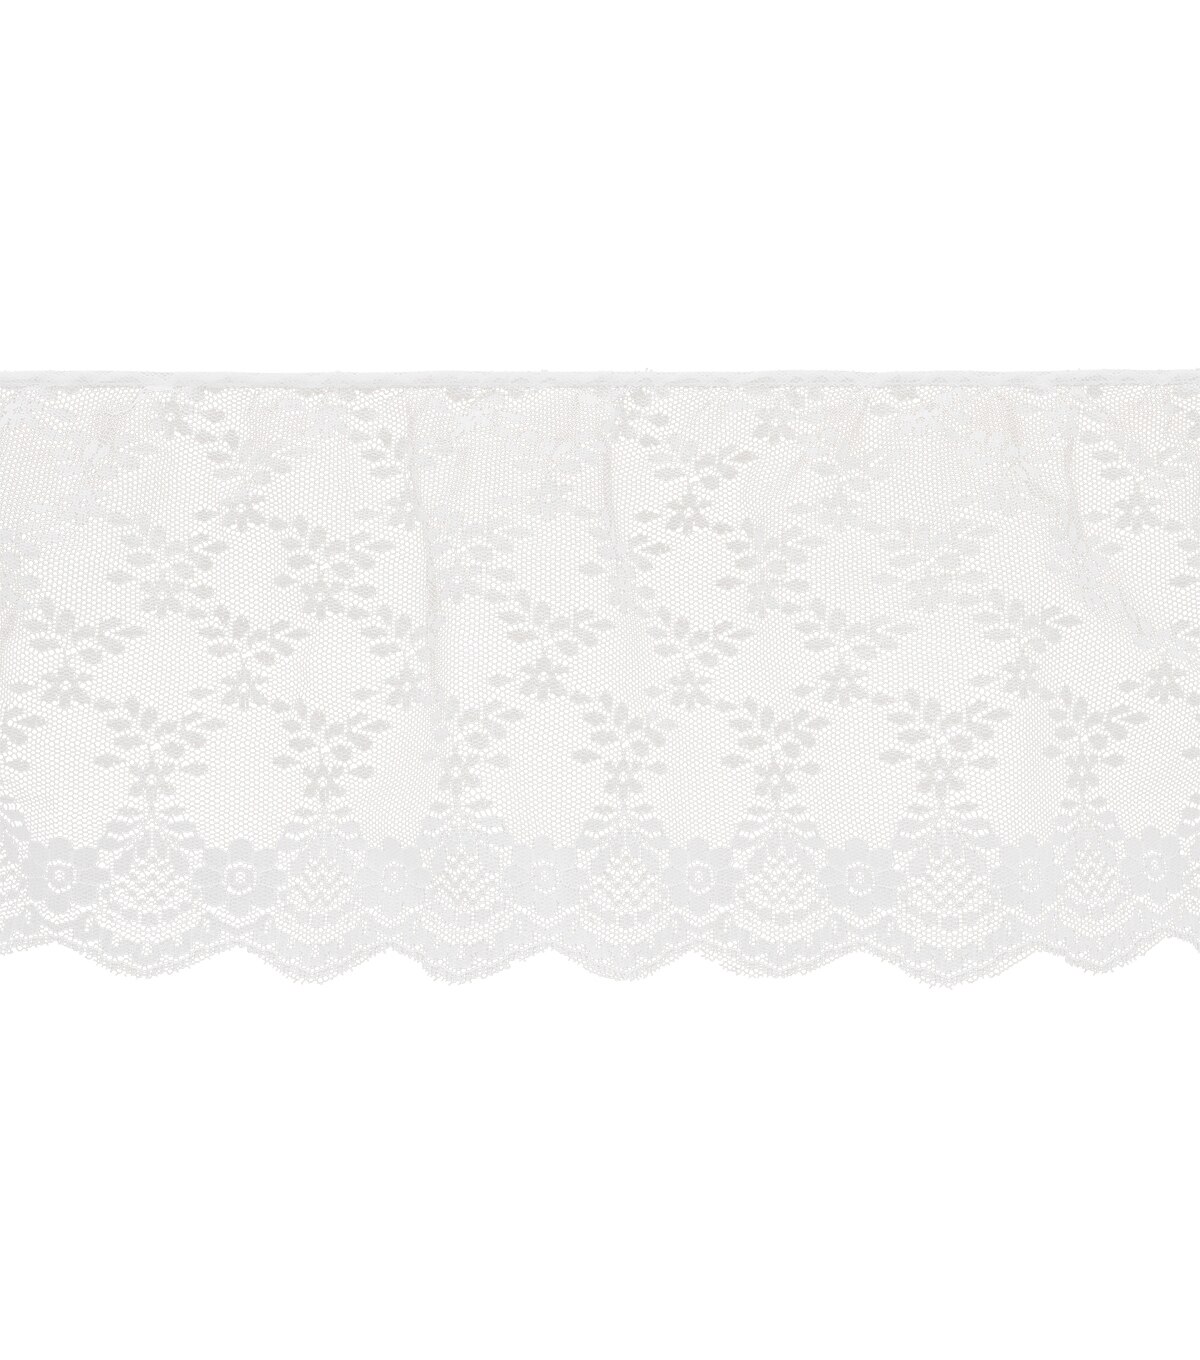 Simplicity Fancy Lace Ruffled Trim 7'' White | JOANN